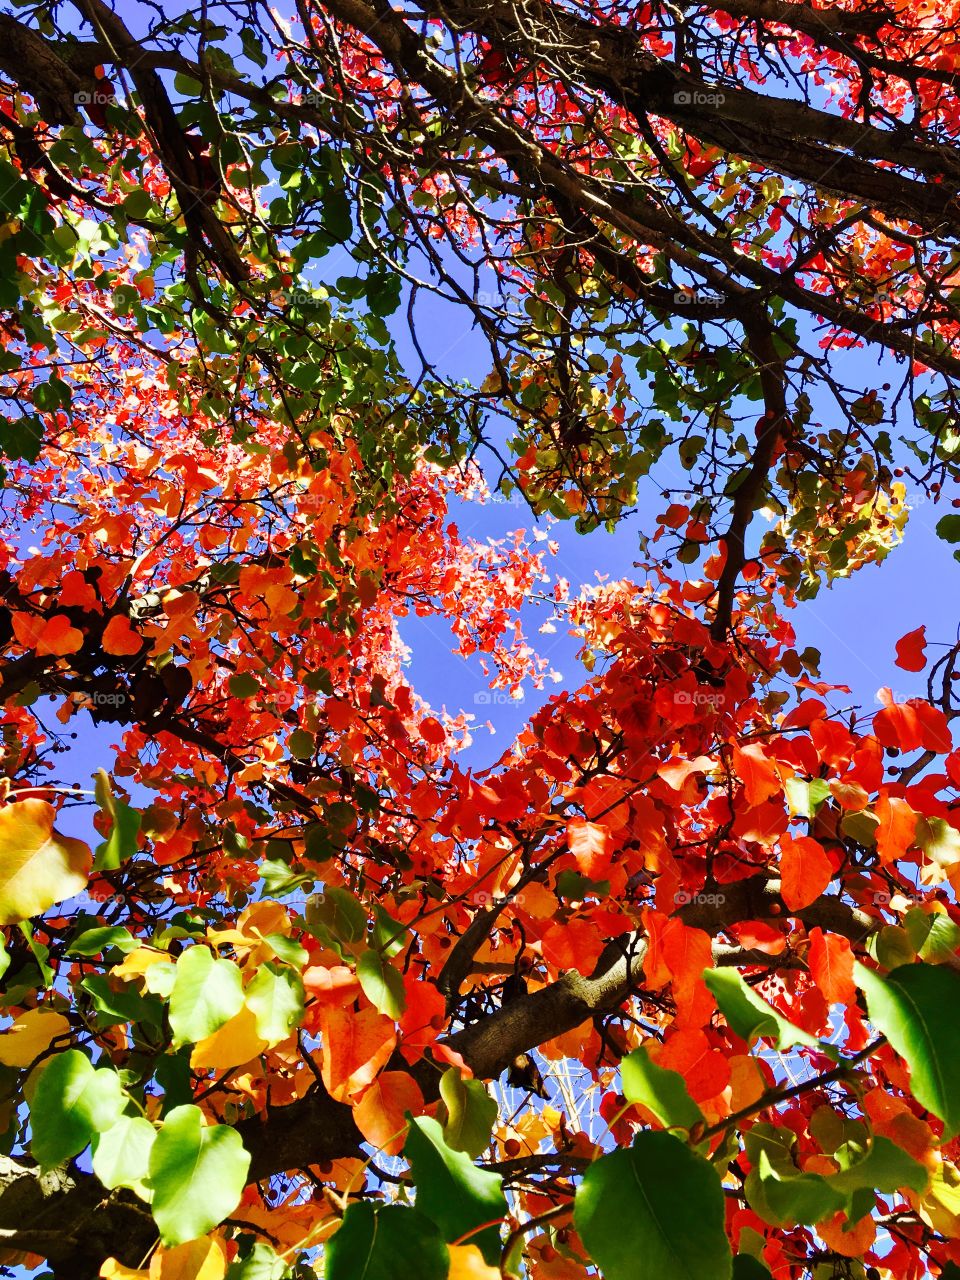 Fall Colors in Sonoma, CA